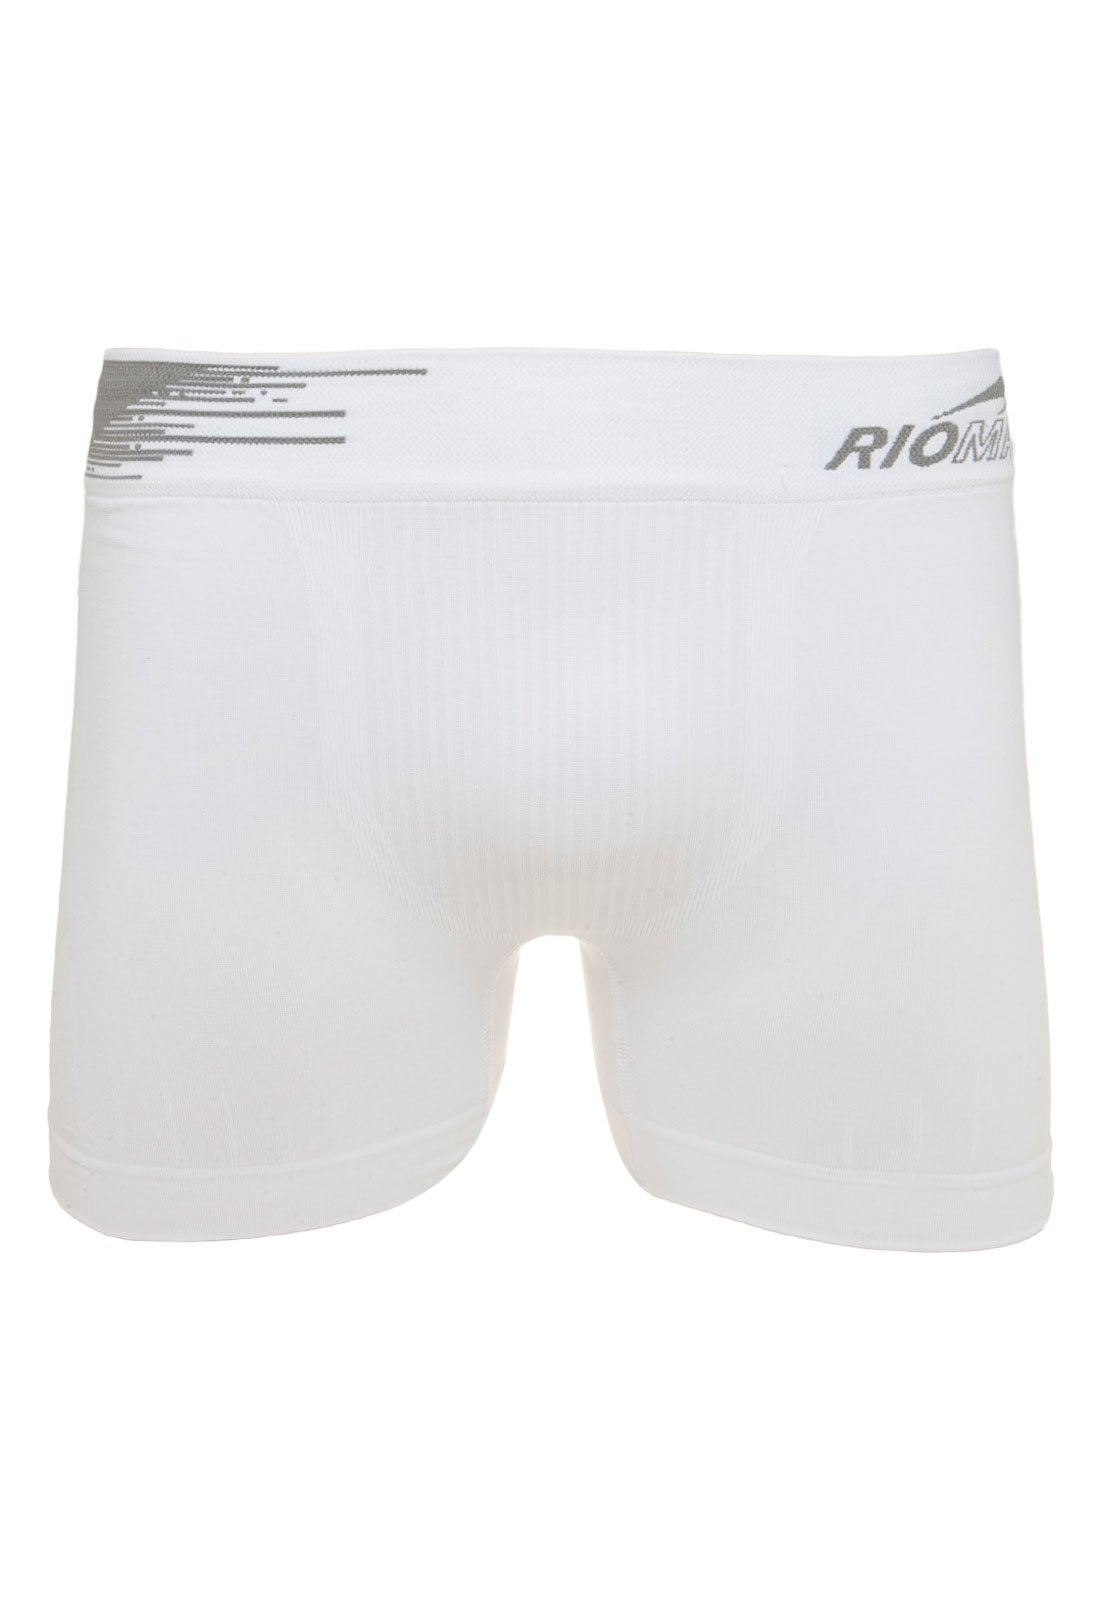 Cueca Rio Man Boxer Comfort Performance Sem Costura Branca - Compre Agora